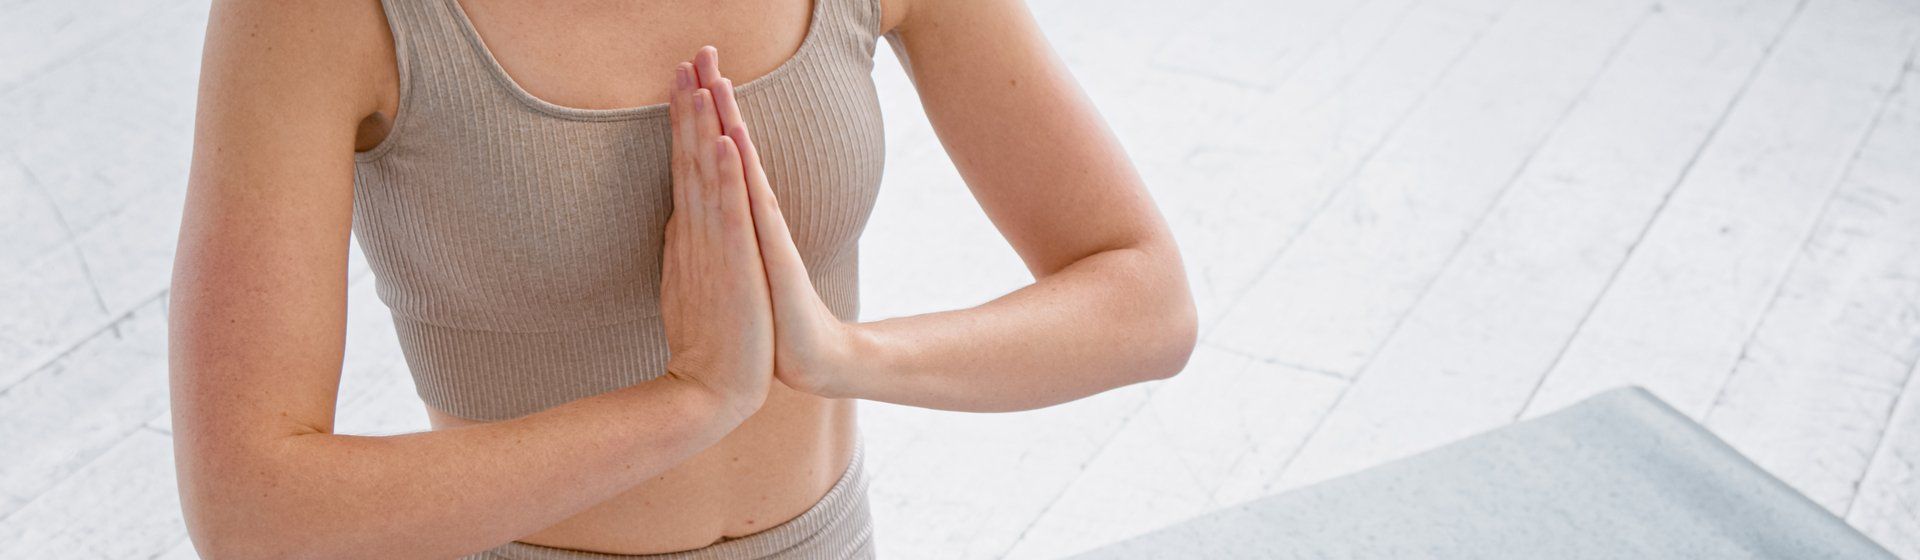 Capa do post: Yoga: Mudra é uma postura de mão que fortalece o corpo e a mente. Saiba mais!